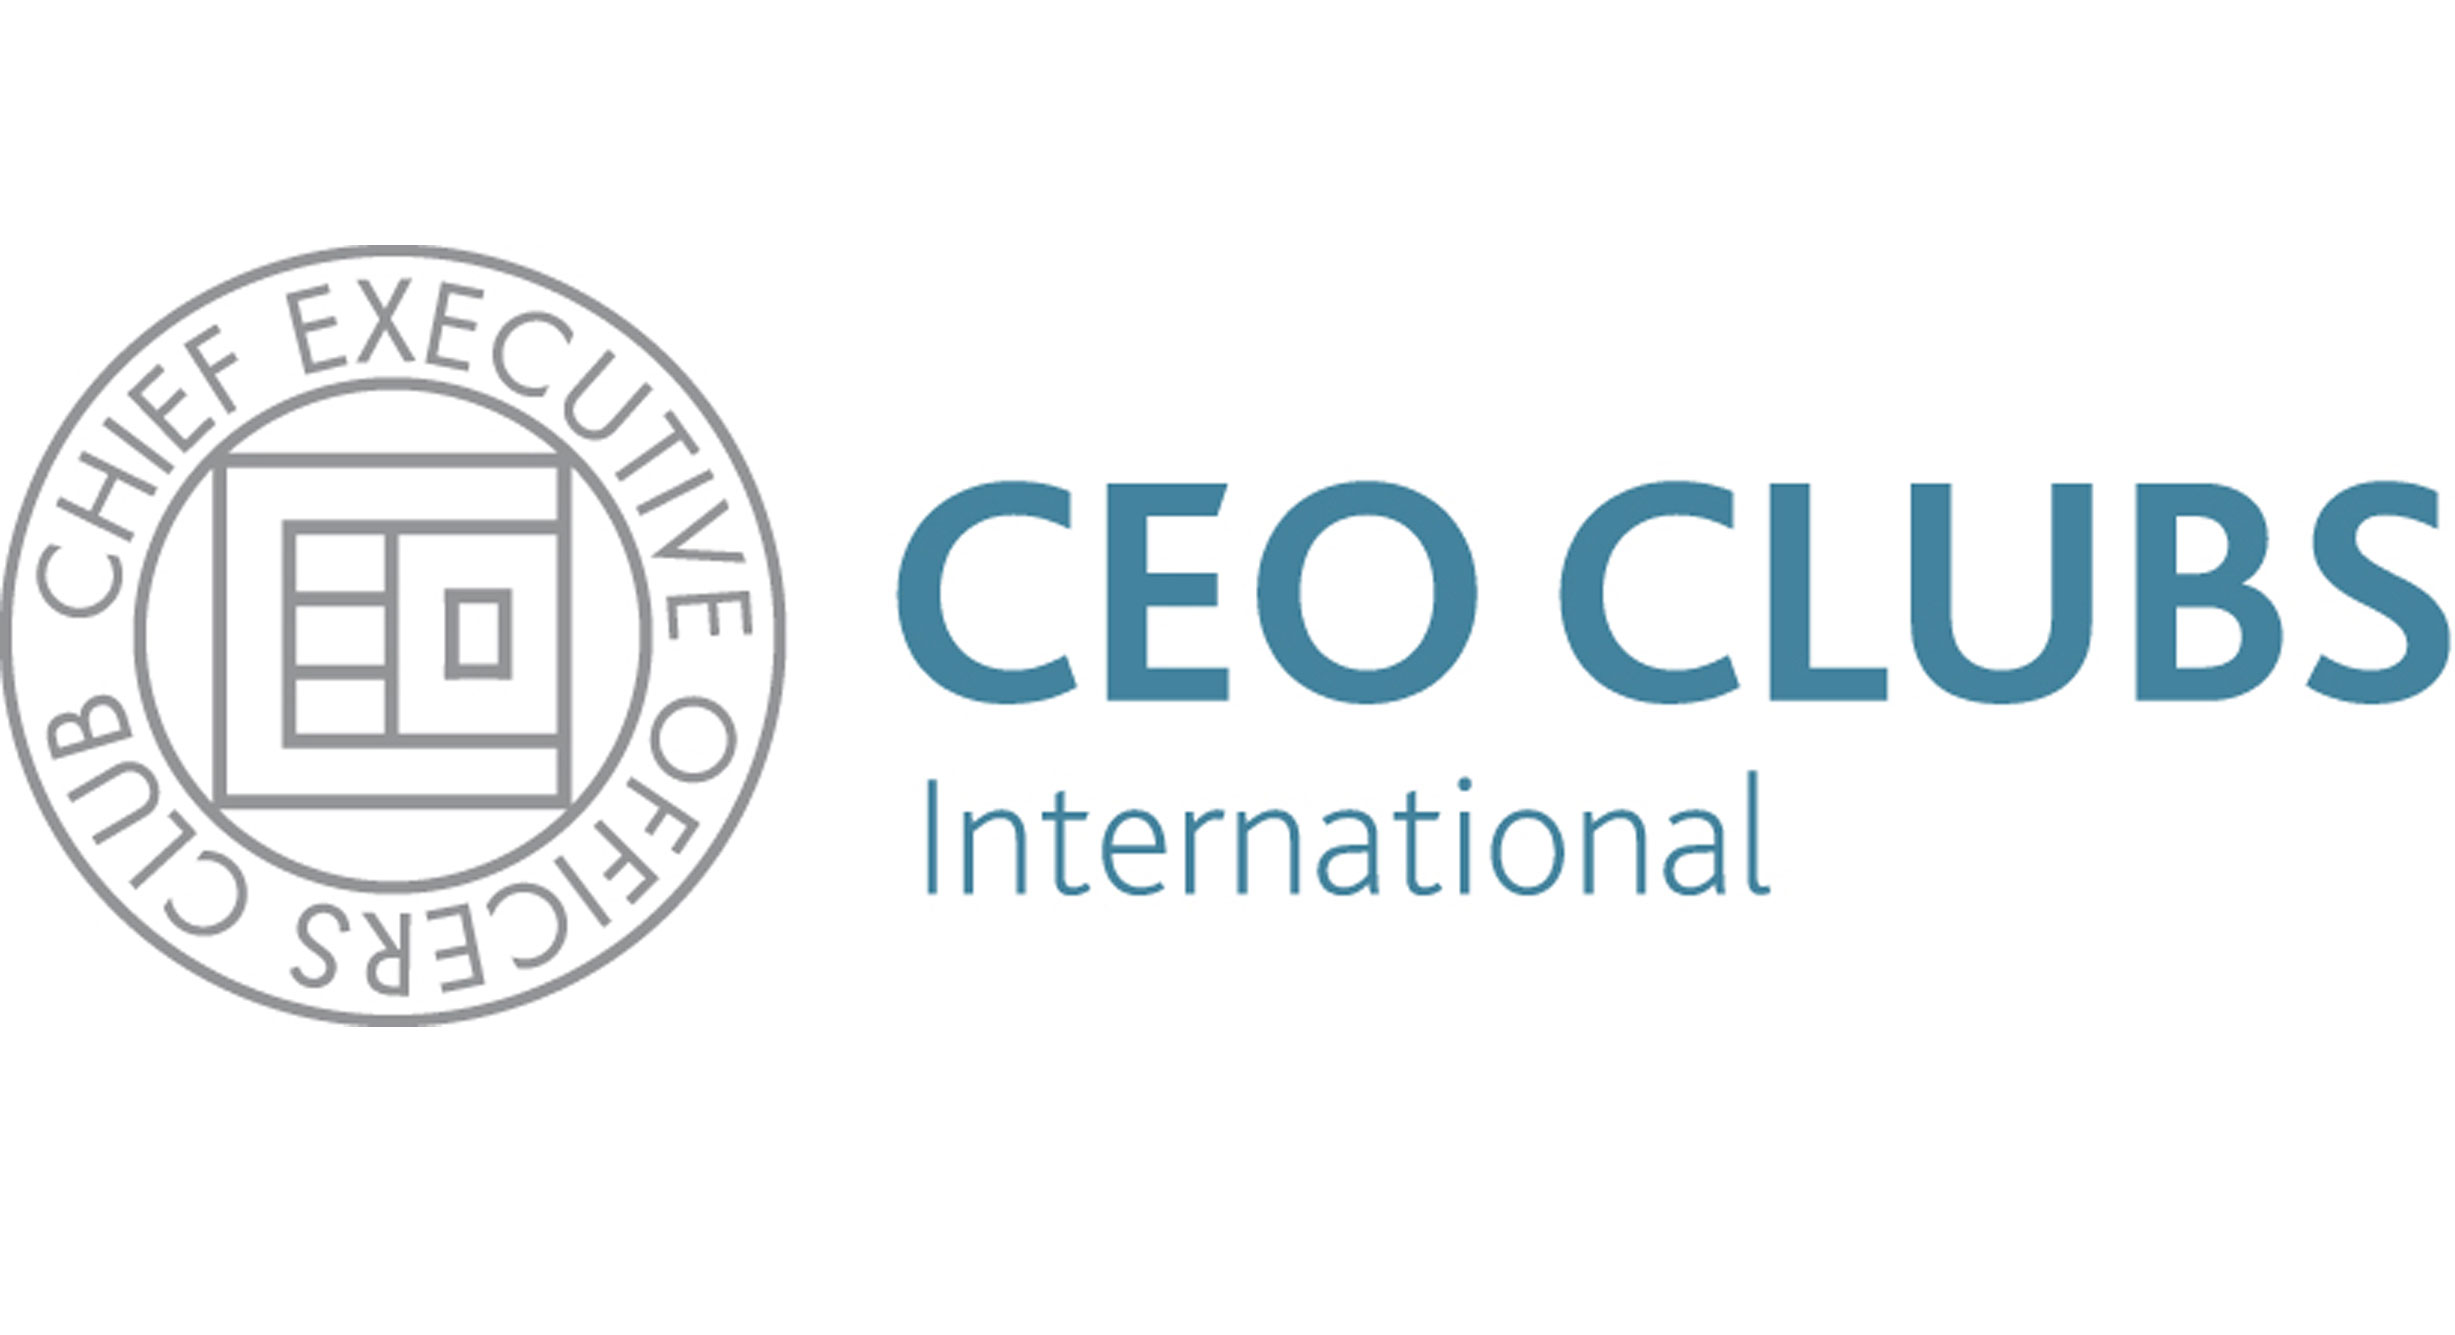 Στήριξη του CEO Clubs Greece στο CEO Clubs Ukraine